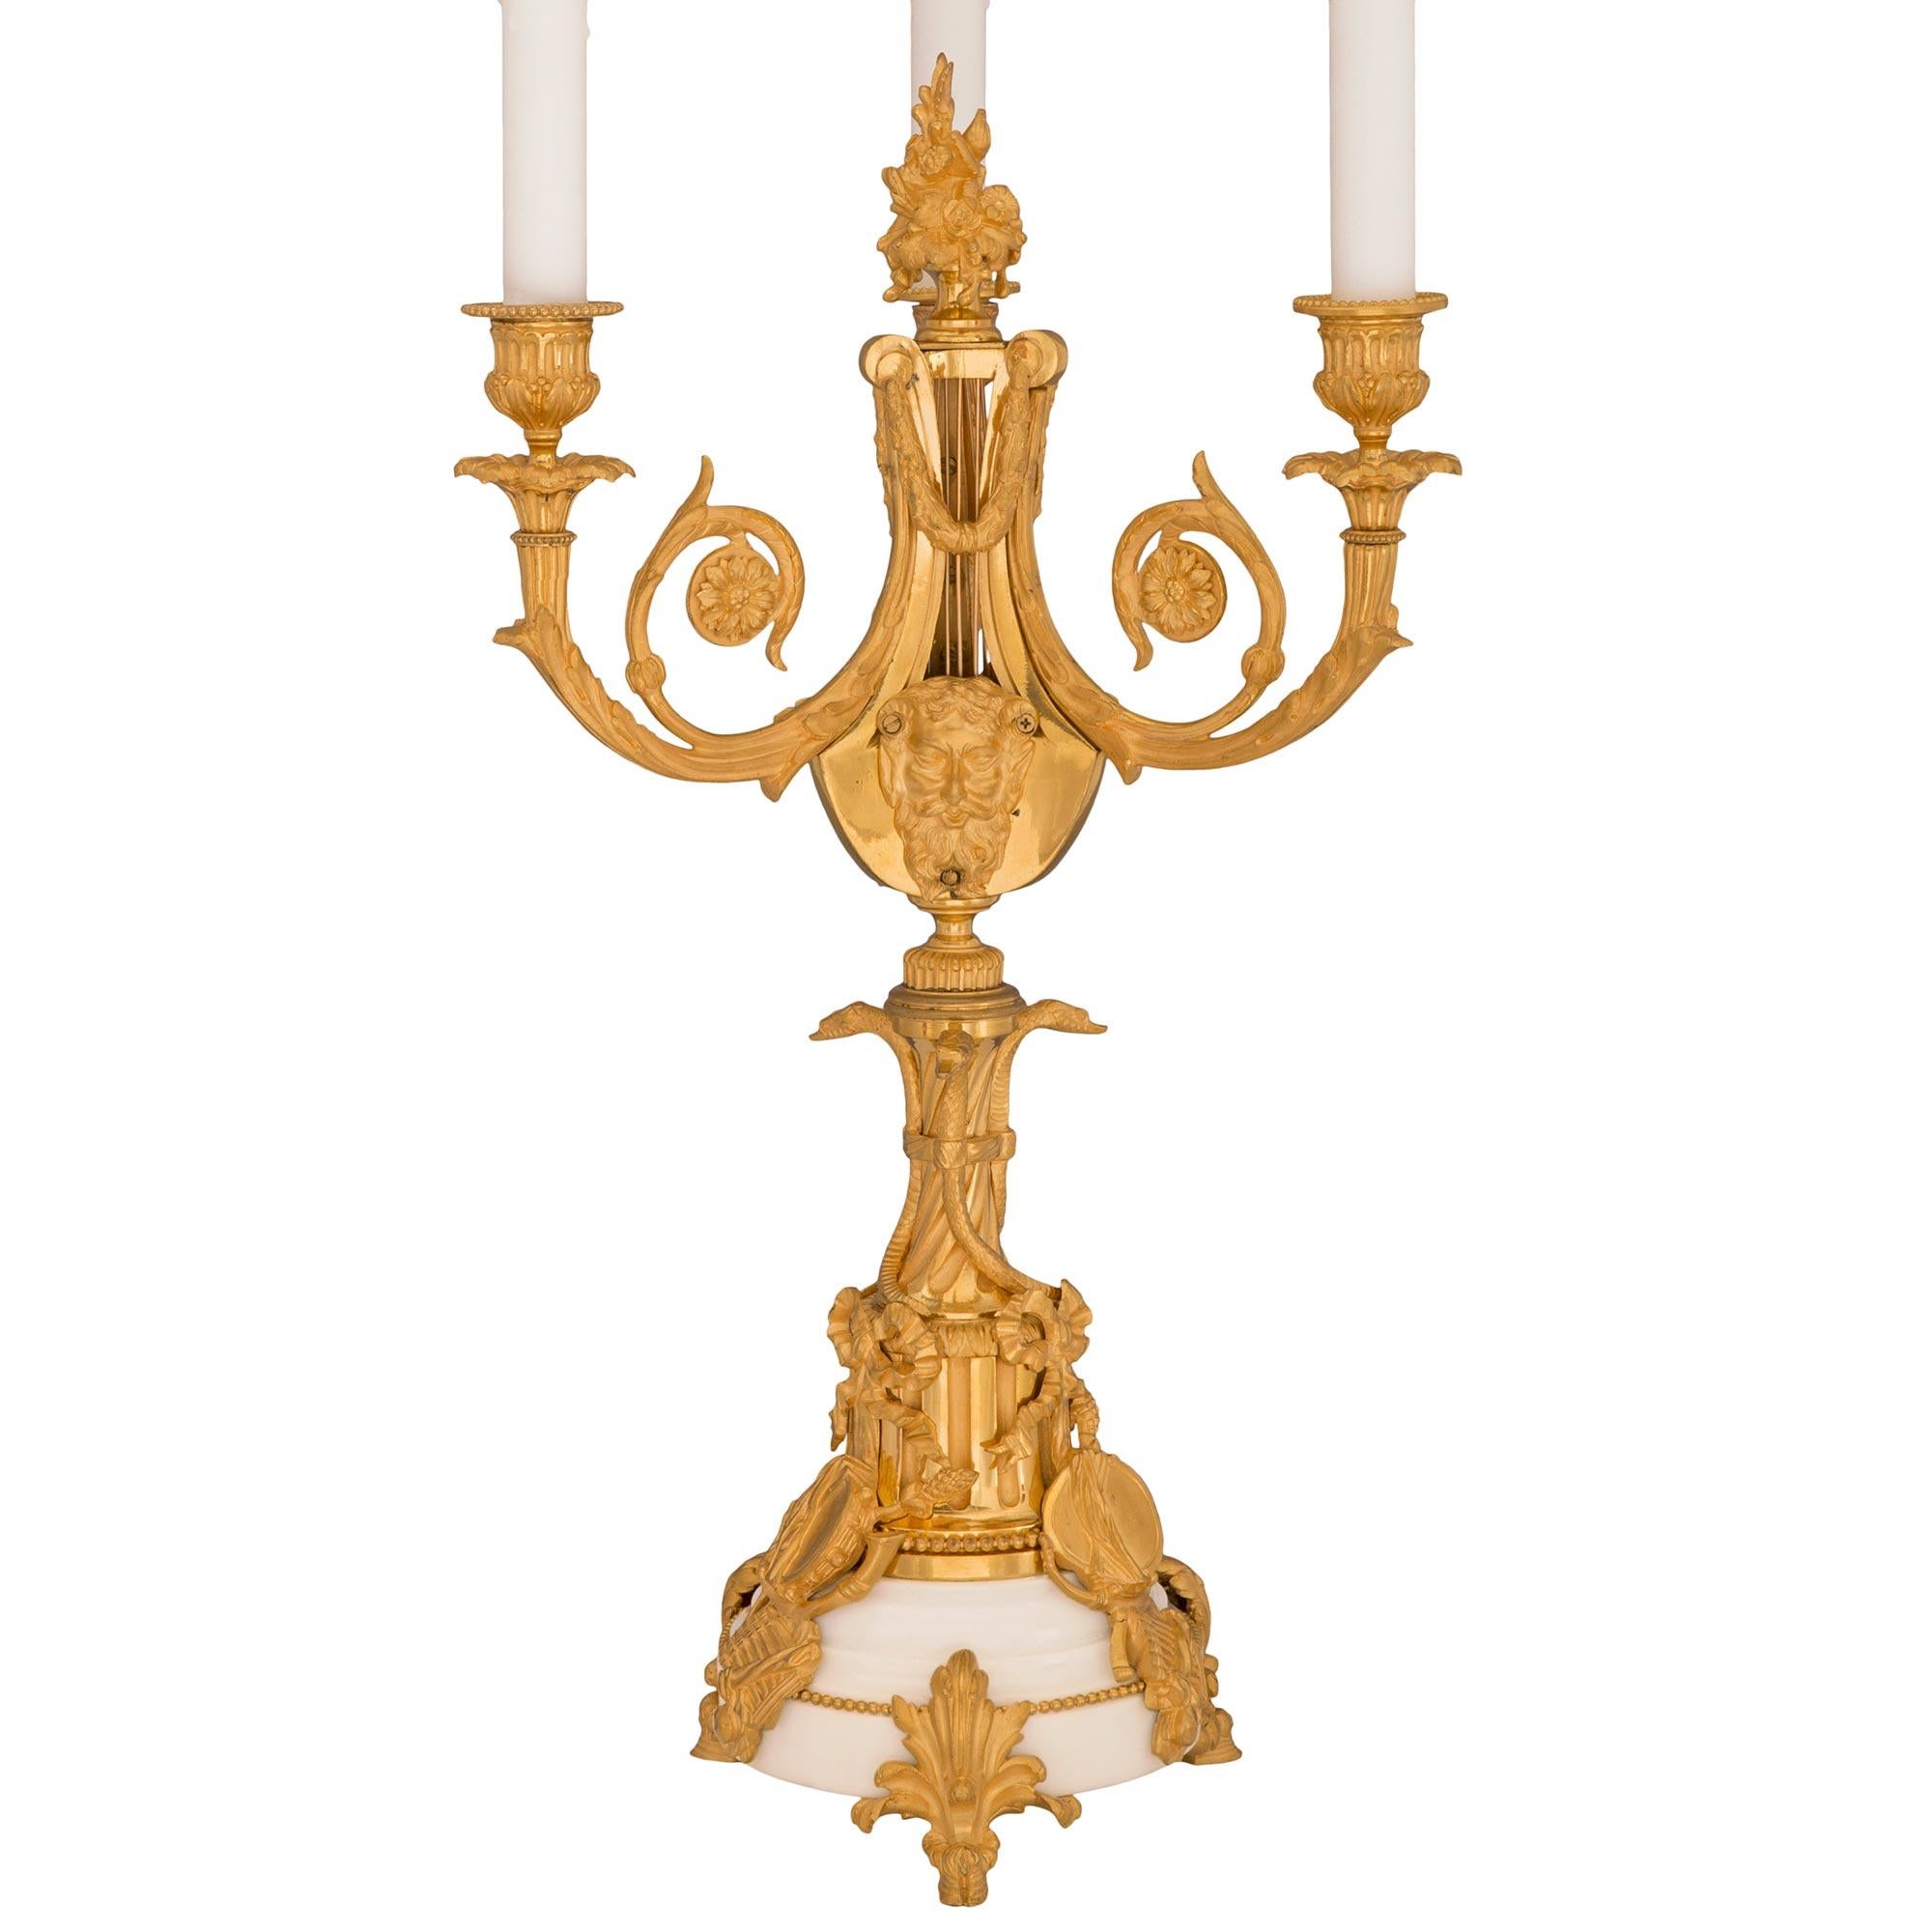 Paire de candélabres en bronze doré et marbre blanc de Carrare, datant du XIXe siècle. Chaque lampe à trois bras est surélevée par une élégante base circulaire en marbre blanc de Carrare à gradins et par de remarquables pieds sabots ornés de